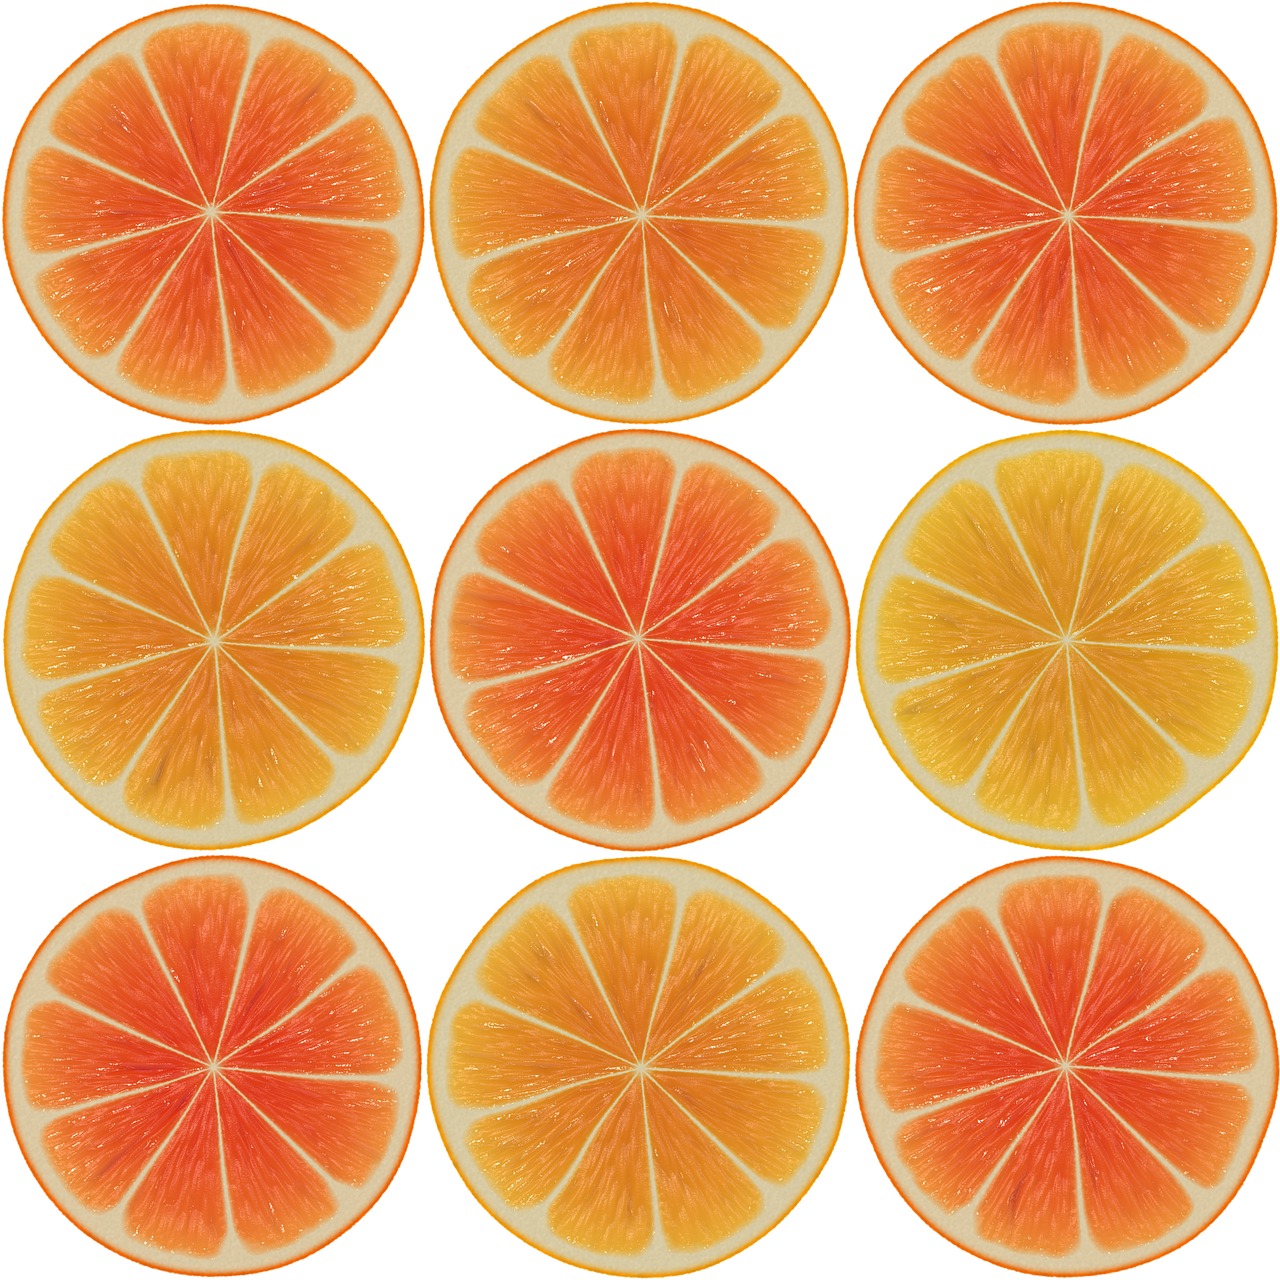 orange discs orange slices free photo